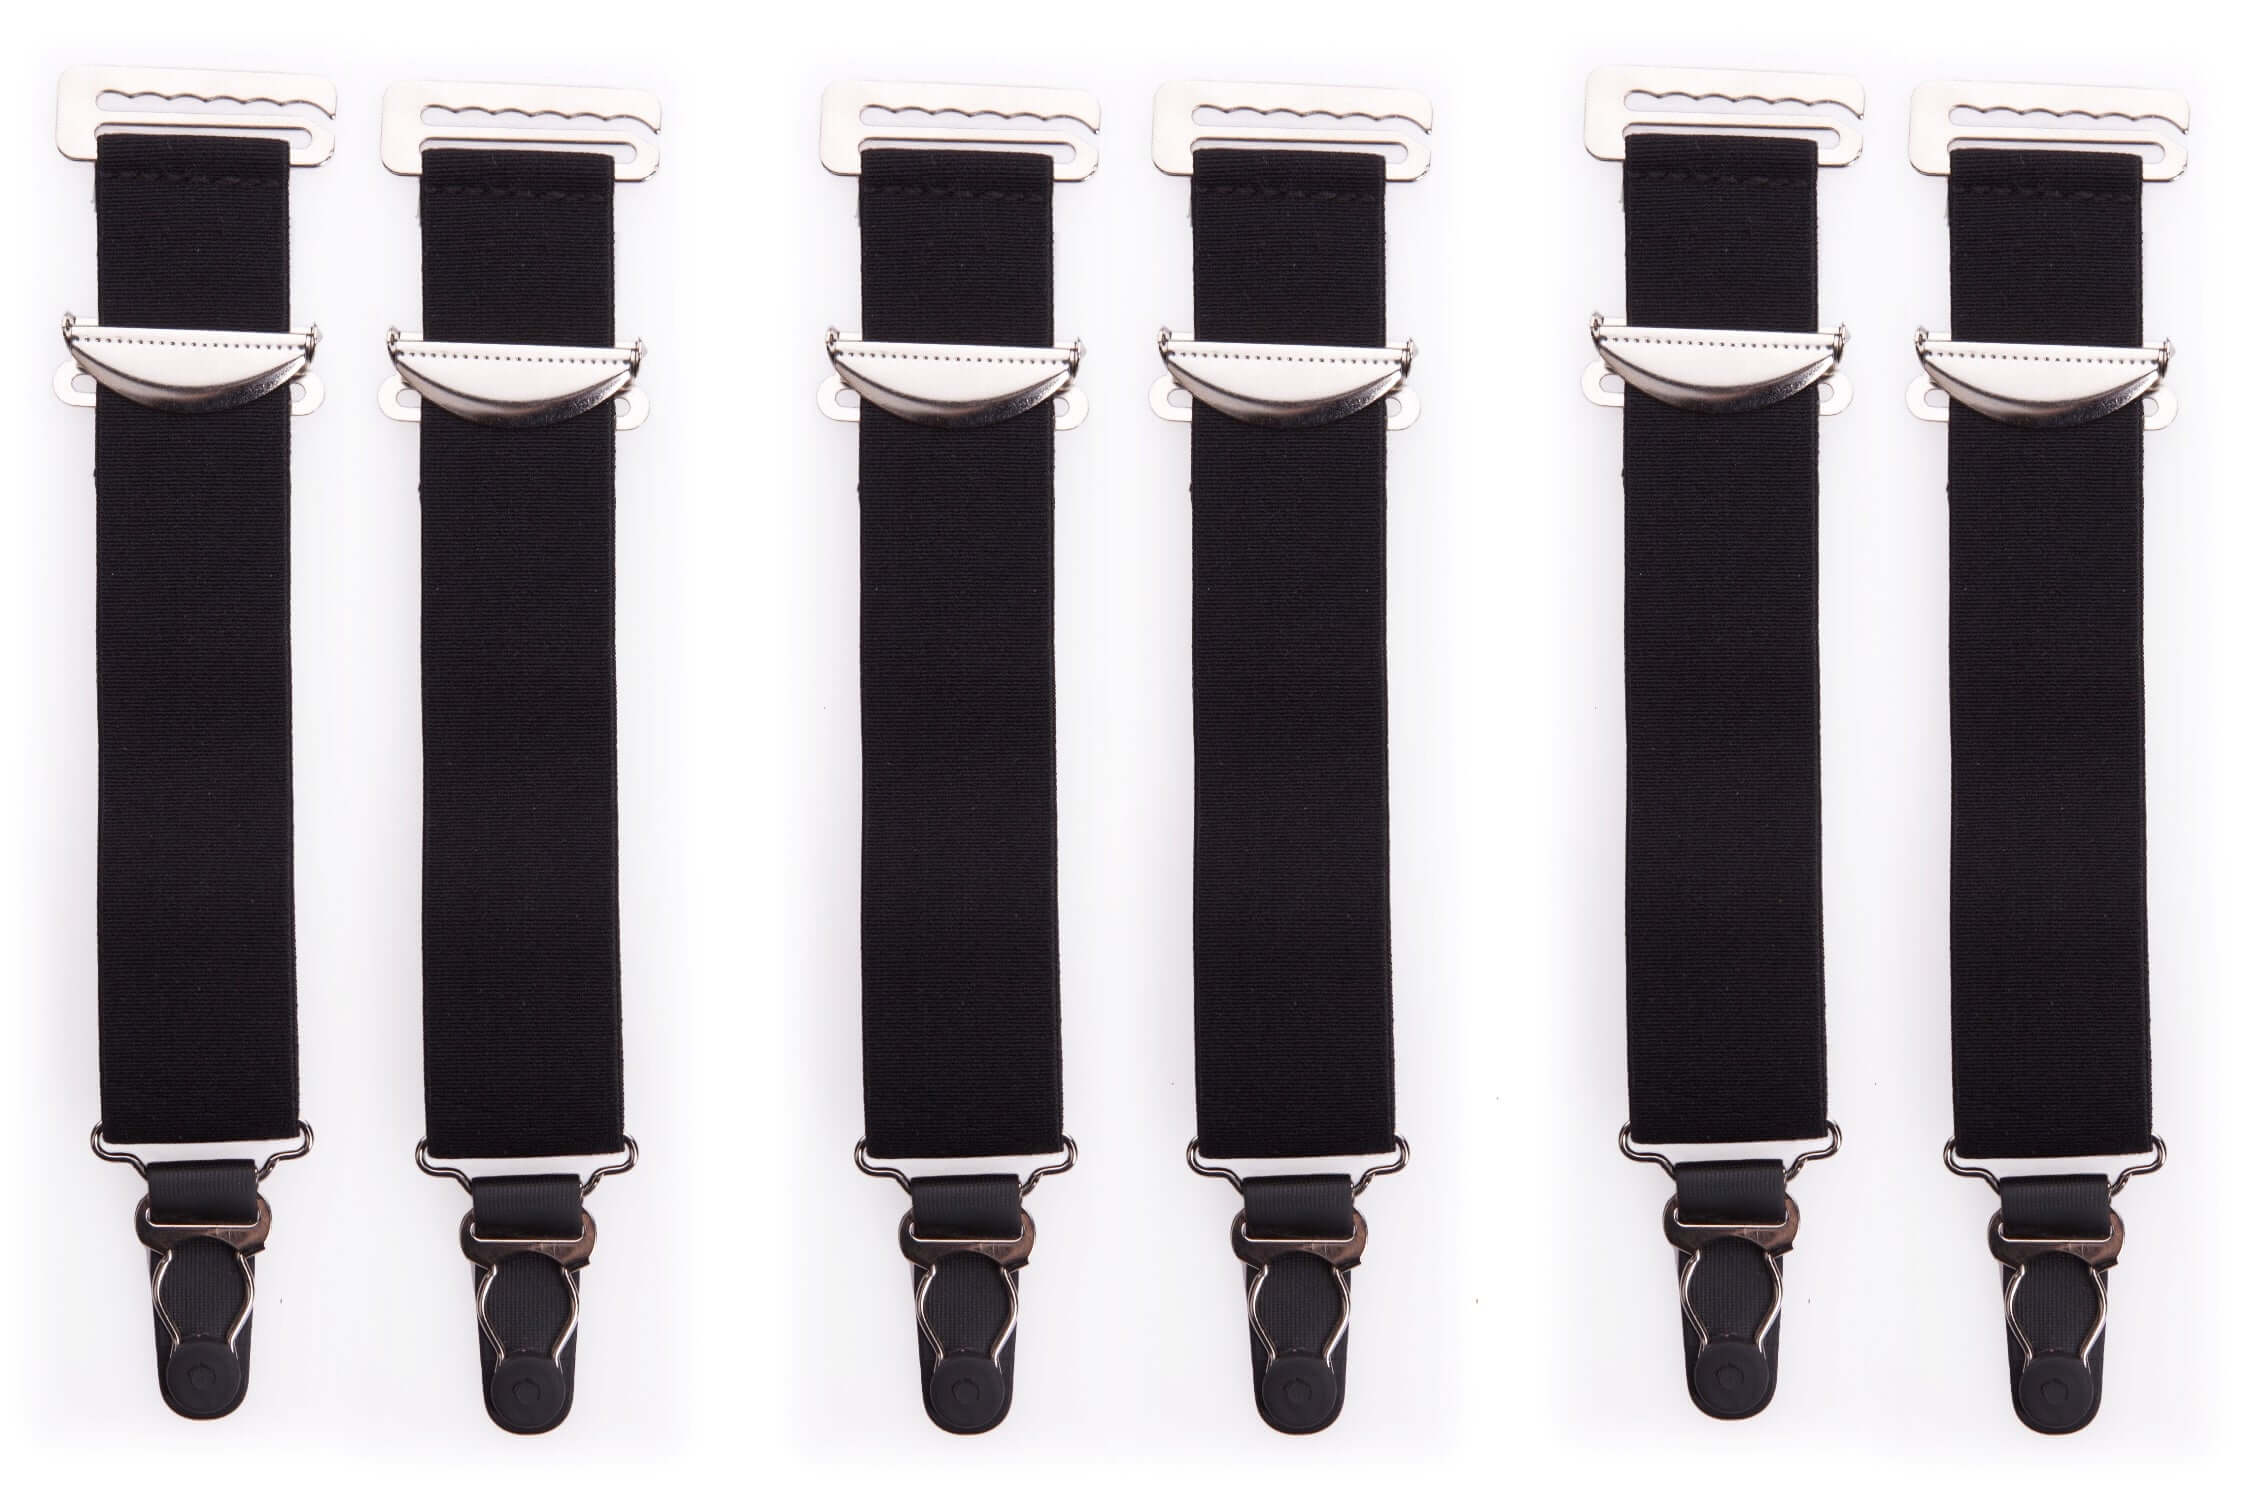 Pair Of Wide Black High Quality Metal Suspenders